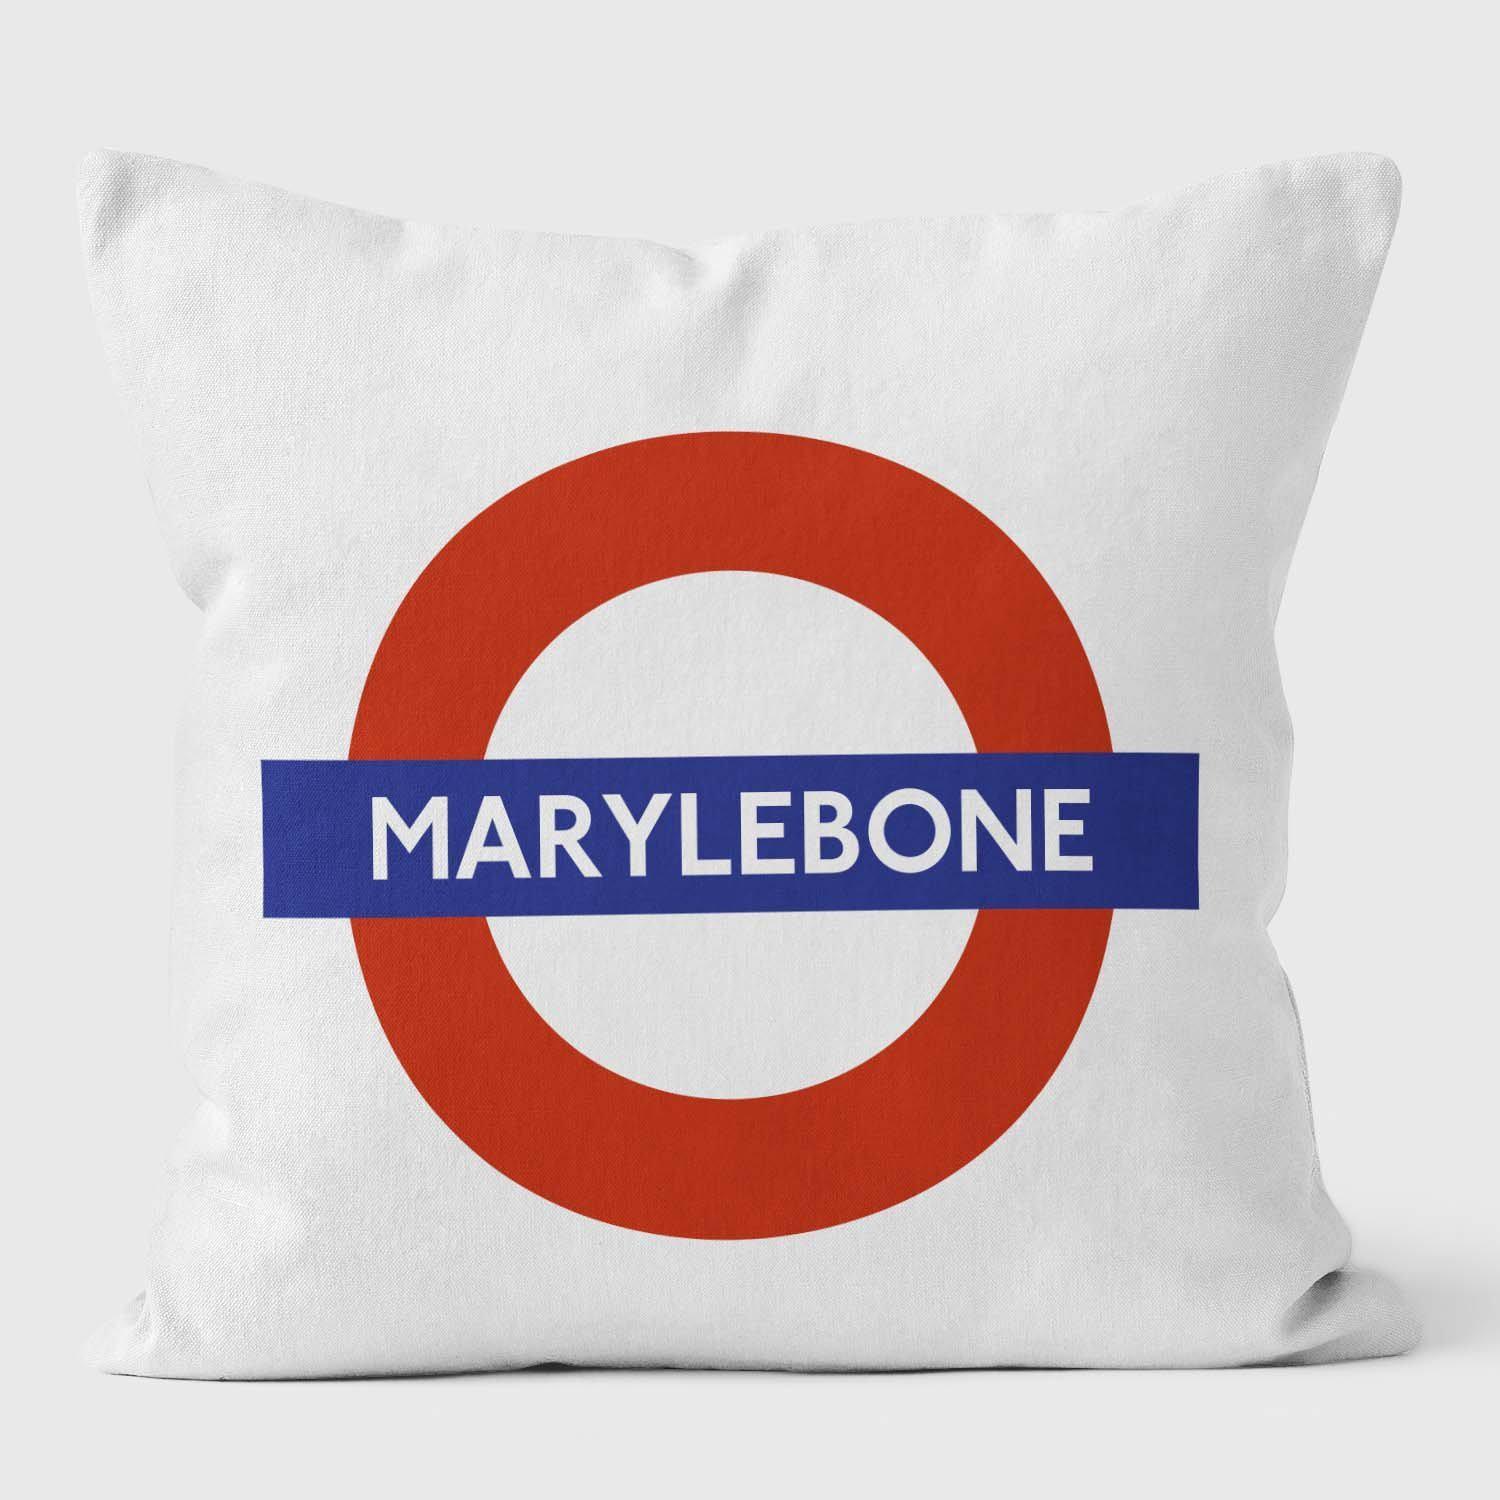 Marlyebone London Underground Tube Station Roundel Cushion - Handmade Cushions UK - WeLoveCushions